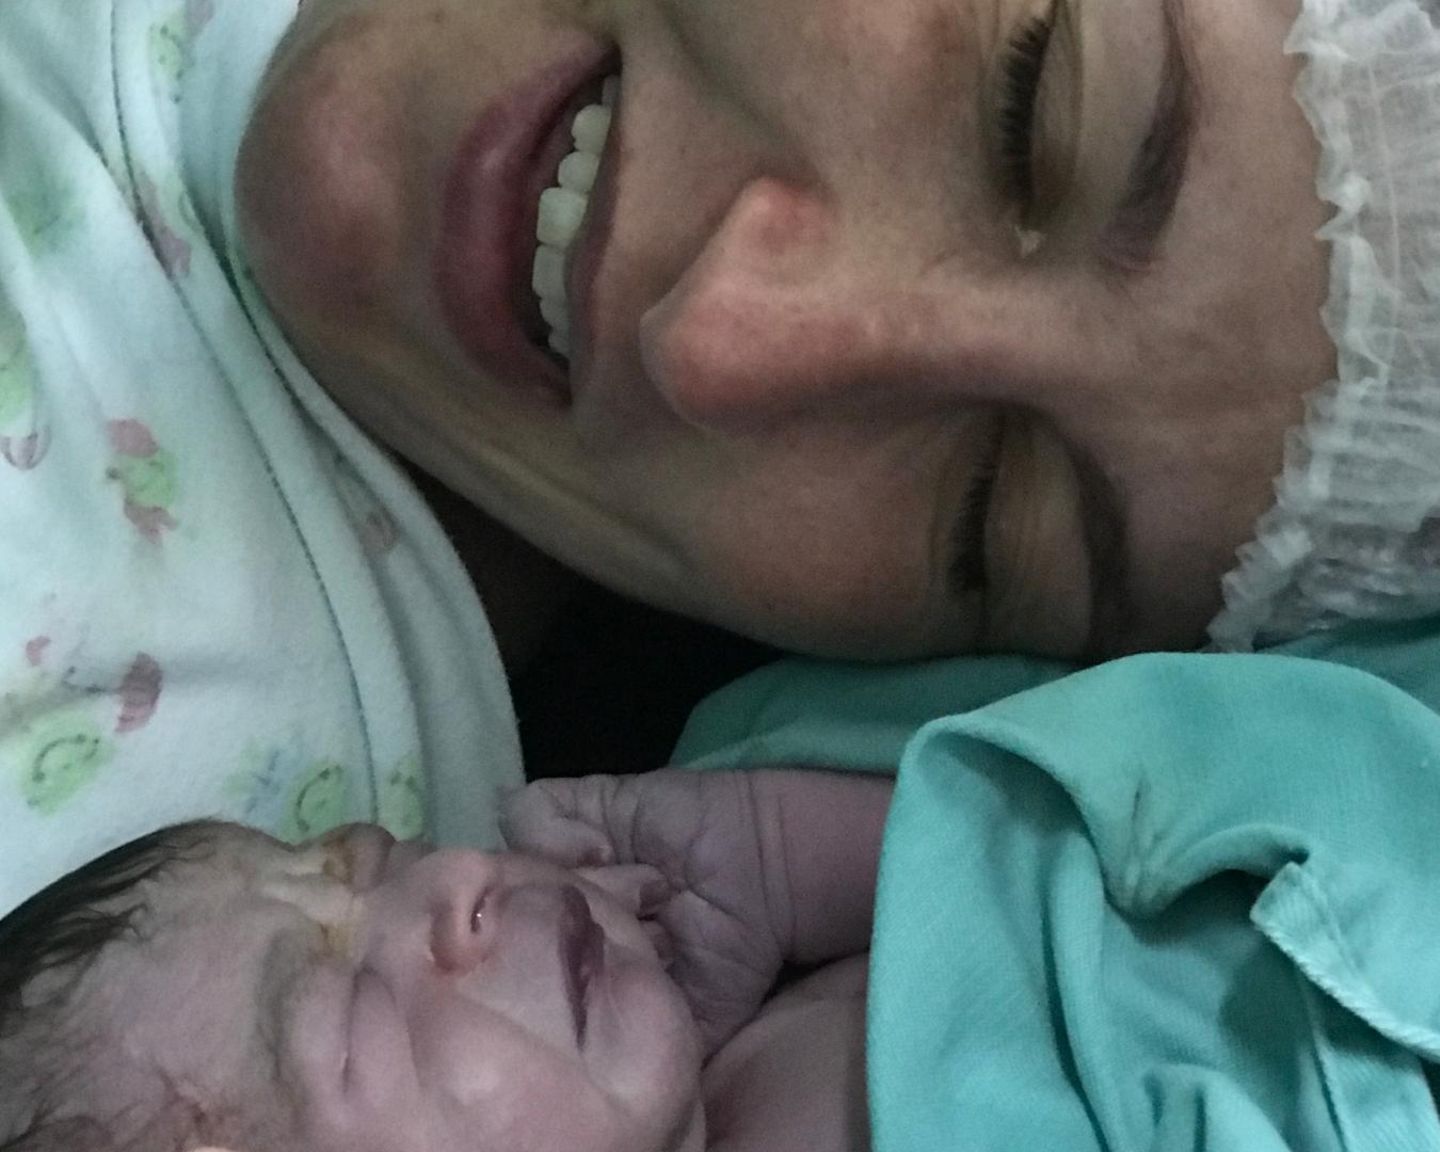 Postpartum Unfiltered: Mutter und Knd nach der Geburt